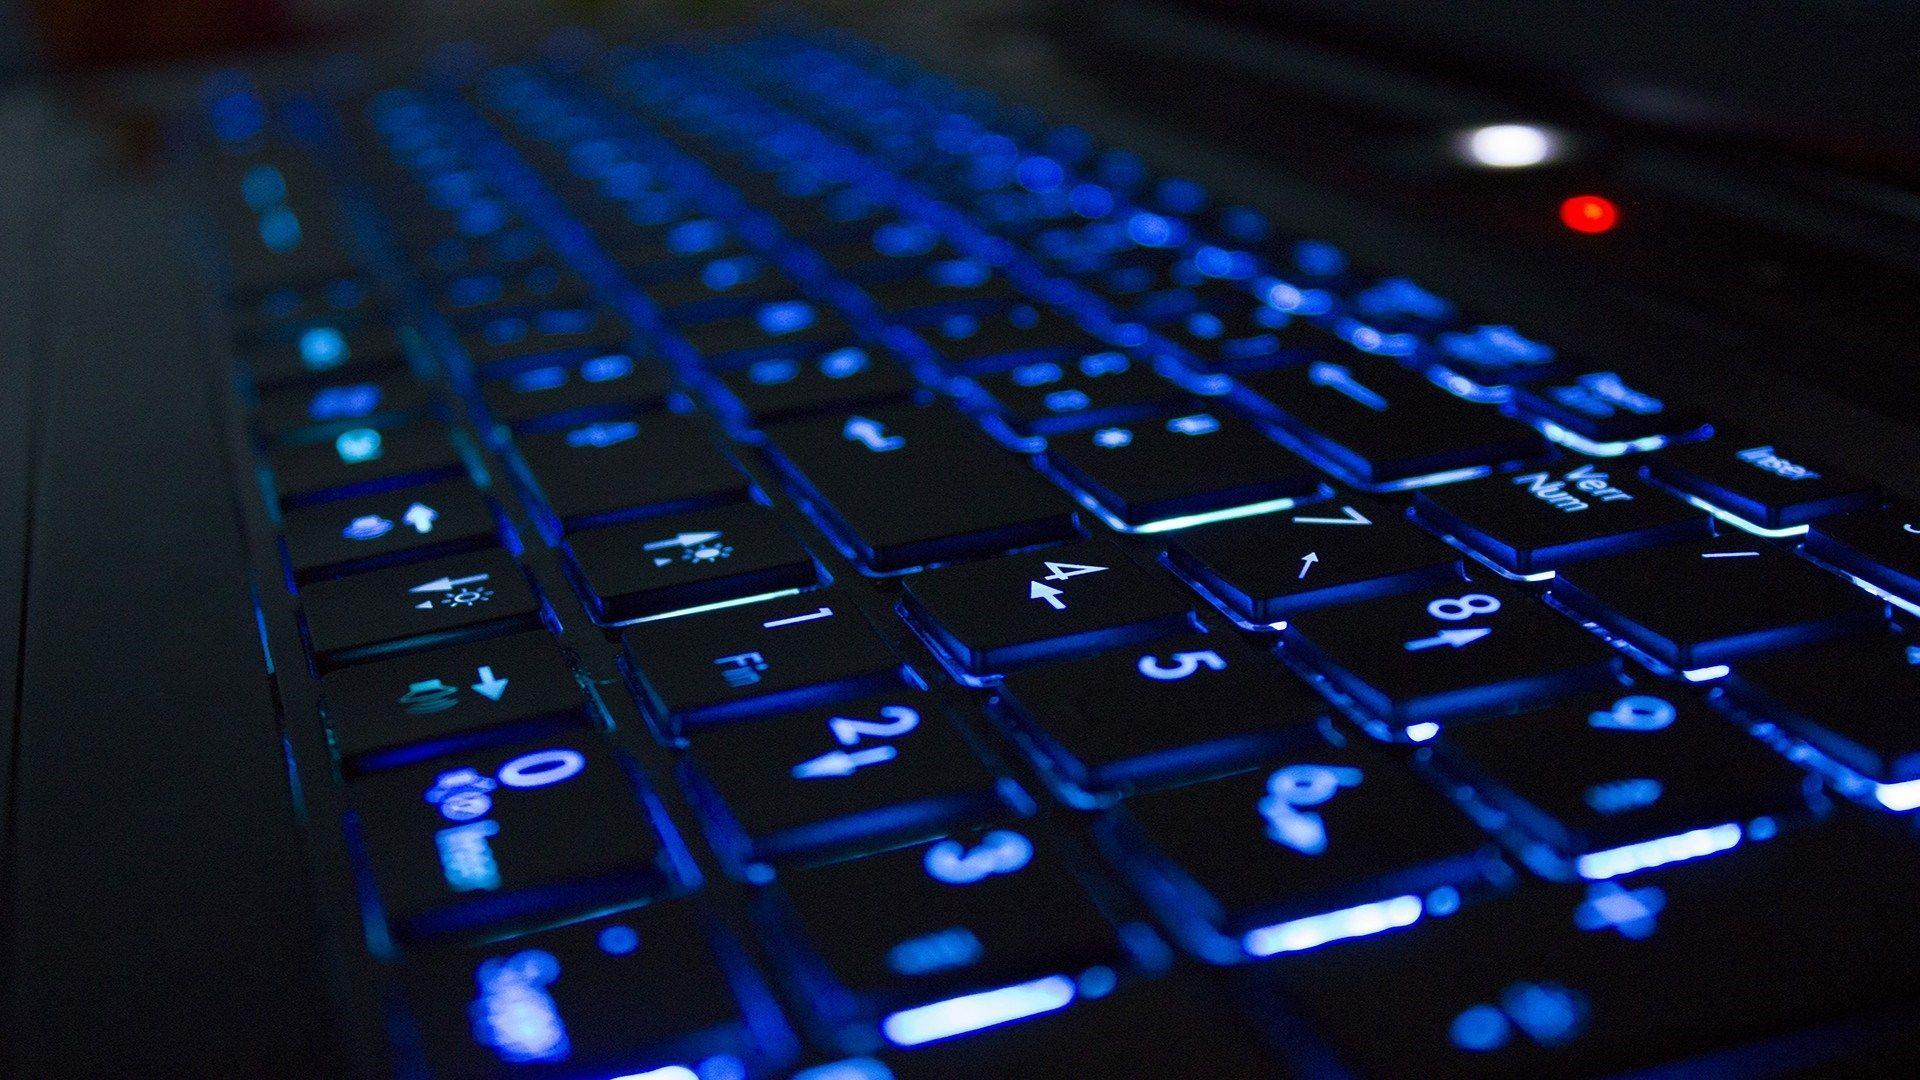 lighted keyboard for desktop